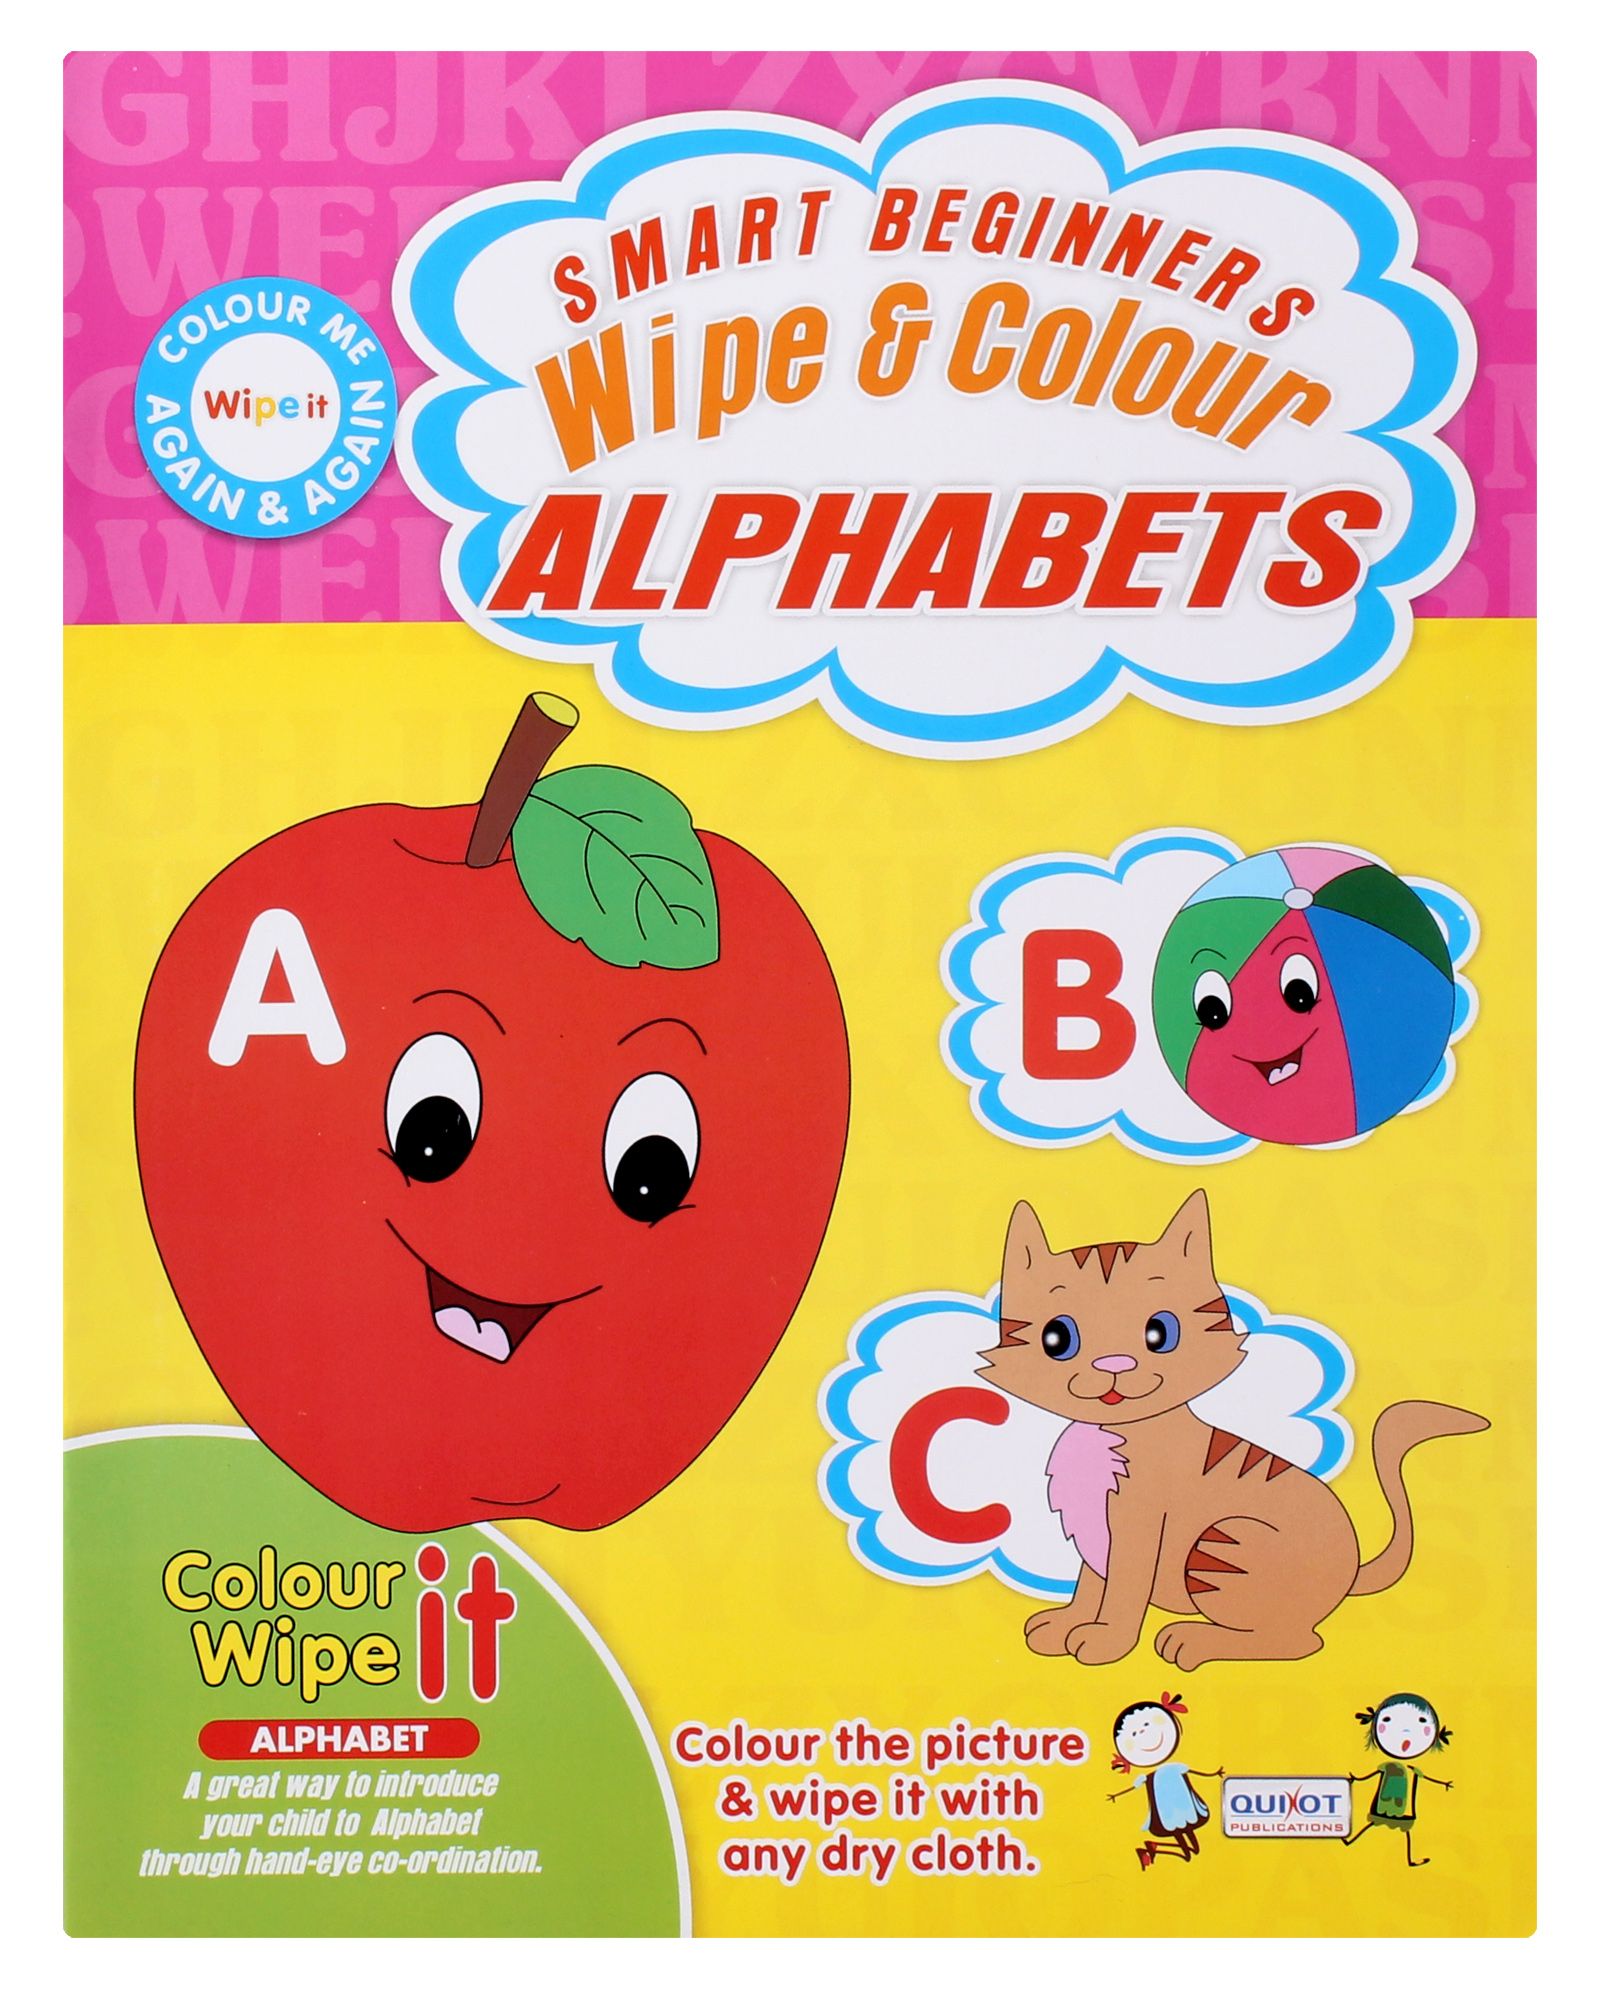 Quixot - Wipe & Colour Alphabets